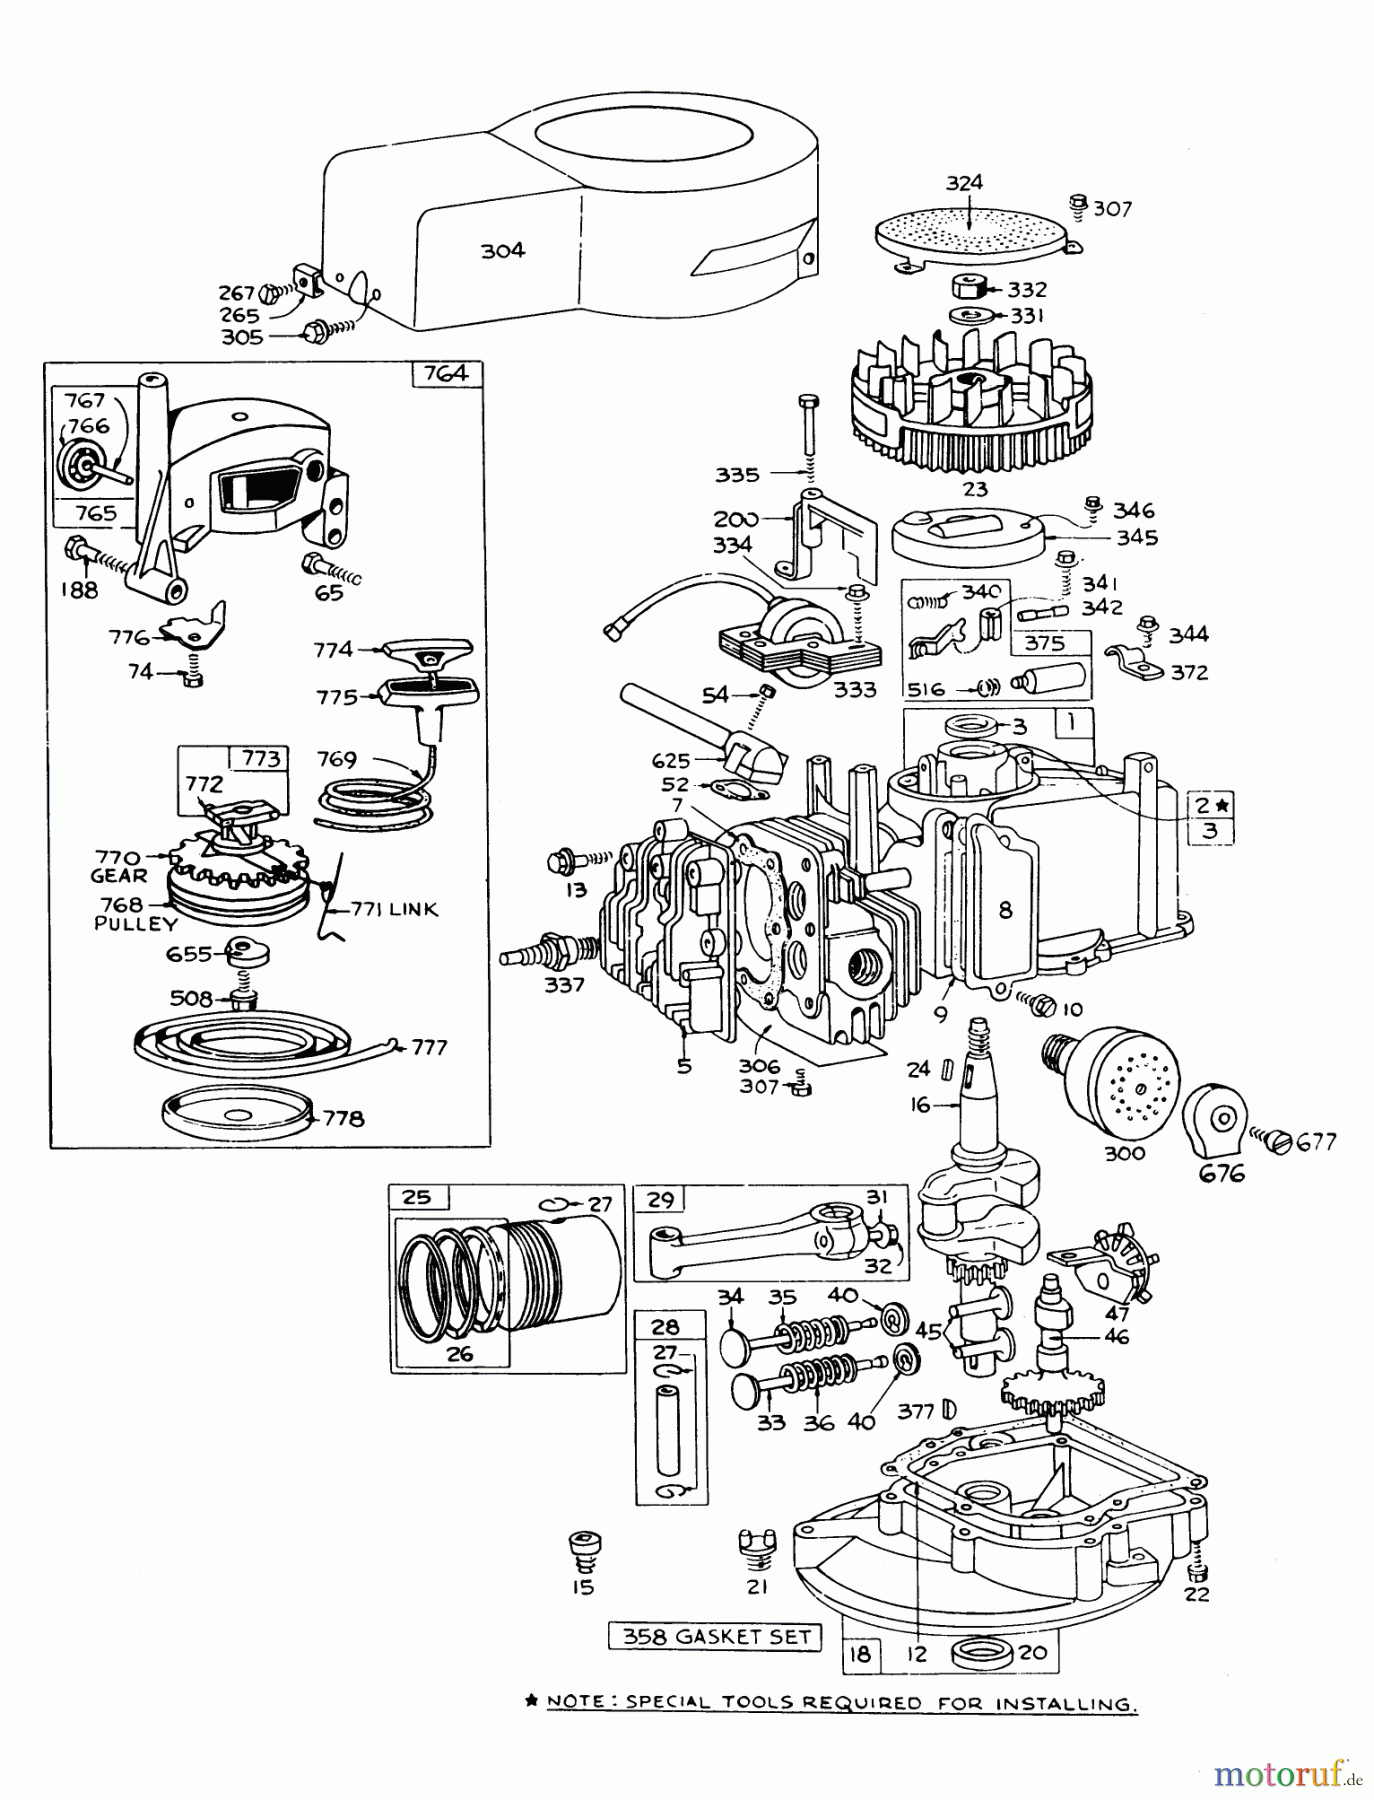  Toro Neu Mowers, Walk-Behind Seite 1 16009 - Toro Whirlwind II Lawnmower, 1978 (8000001-8999999) ENGINE BRIGGS & STRATTON MODEL 92508-0954-01 FOR 19